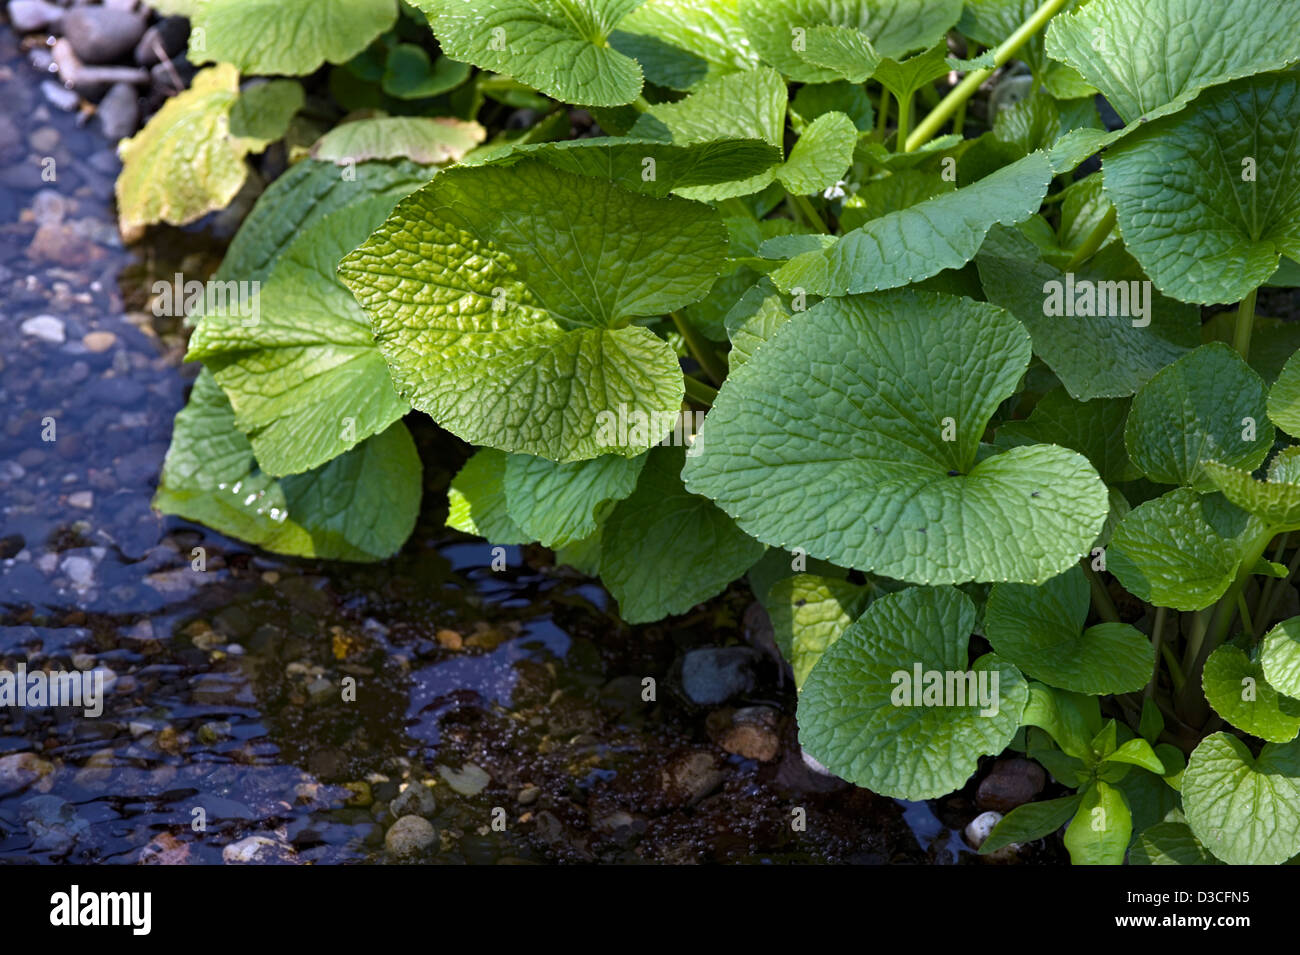 Feuilles vert frais du wasabi (raifort japonais) des plantes qui poussent dans l'eau de la rivière de montagne à Daio Wasabi Nojo ferme, Japon Banque D'Images